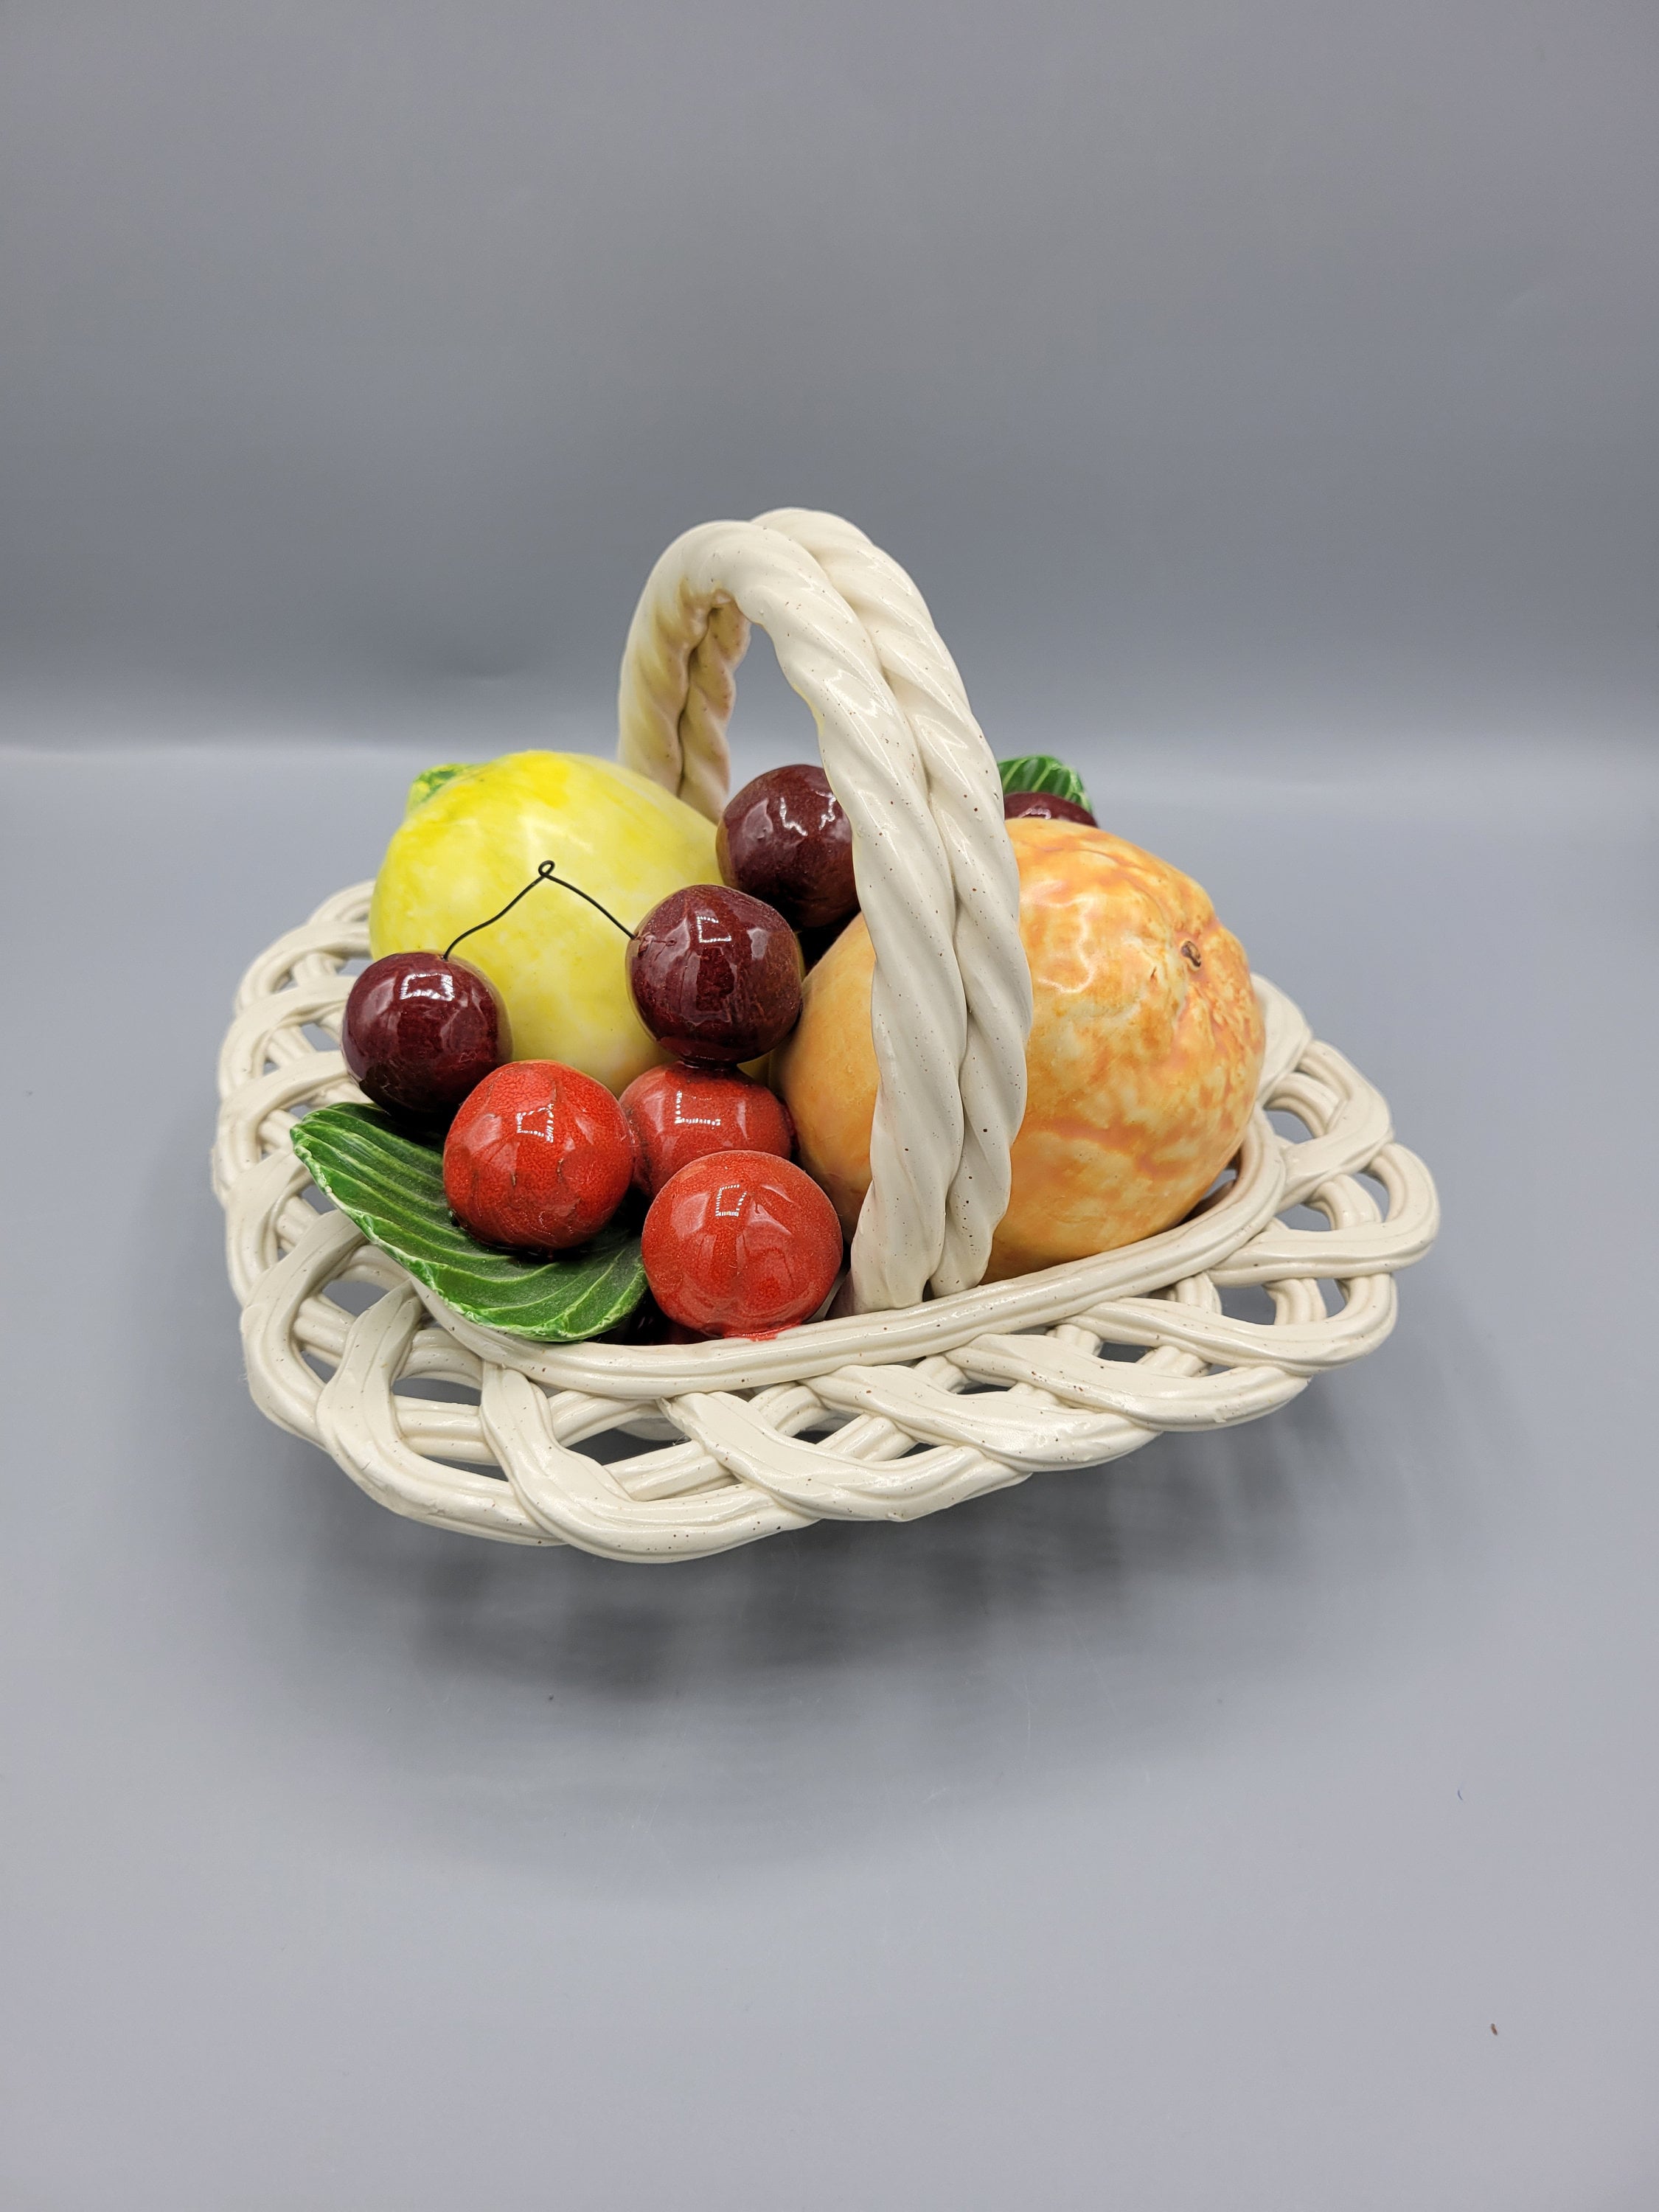 Buy Laplast Multicolour Fruit Basket 3 Pcs Online At Best Price of